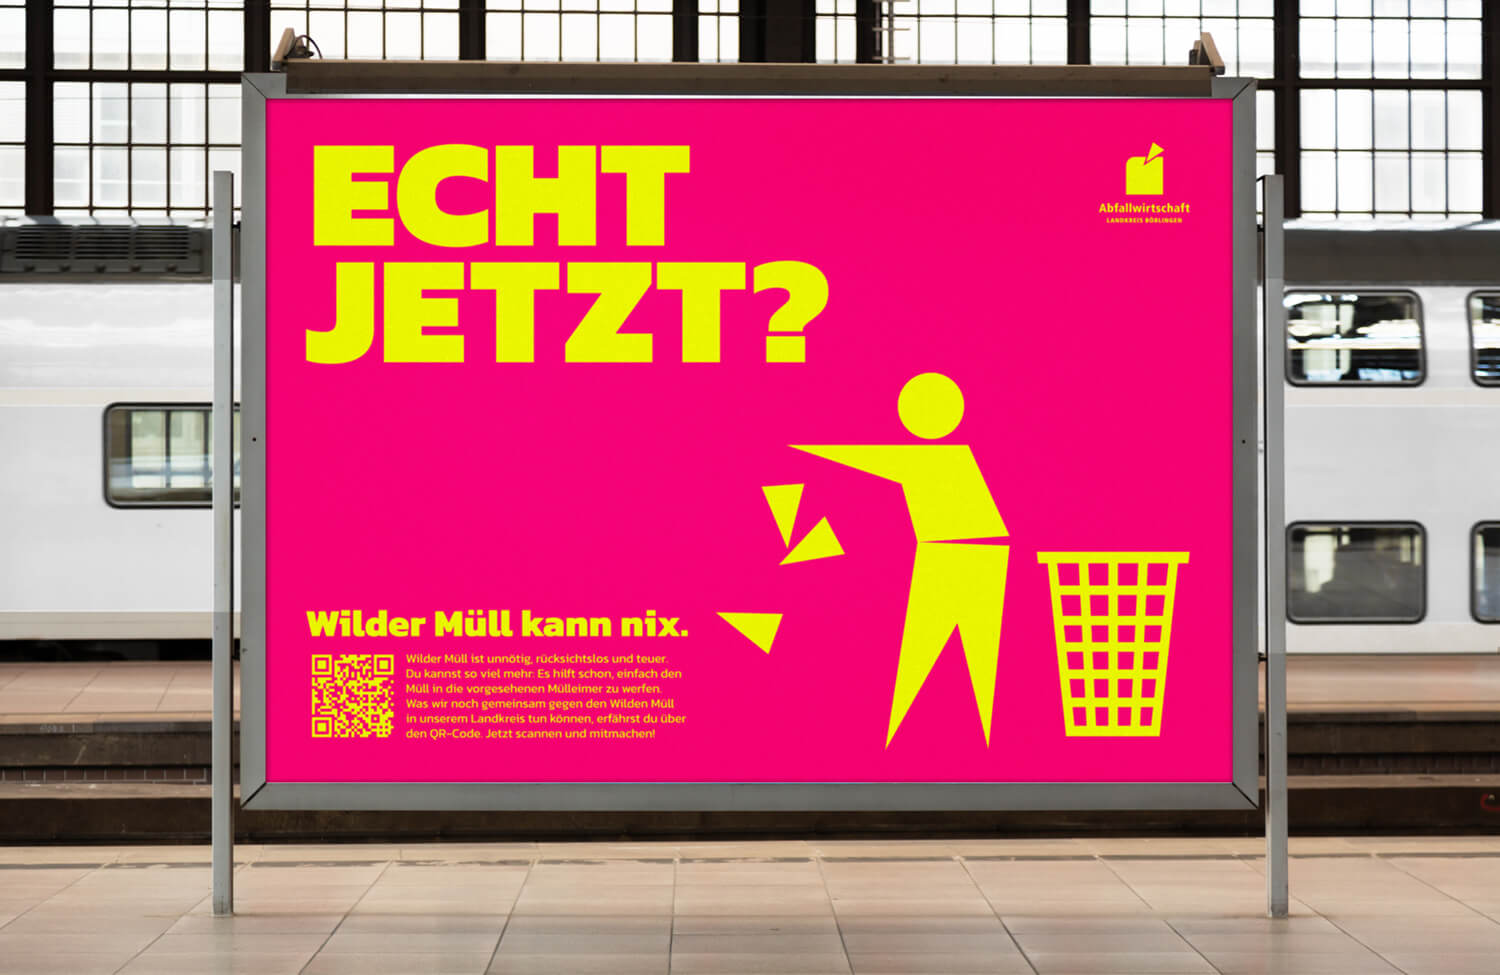 Wilder Müll kann nix: Echt jetzt? Kampagne gegen illegale Abfallentsorgung des Landkreis Böblingen